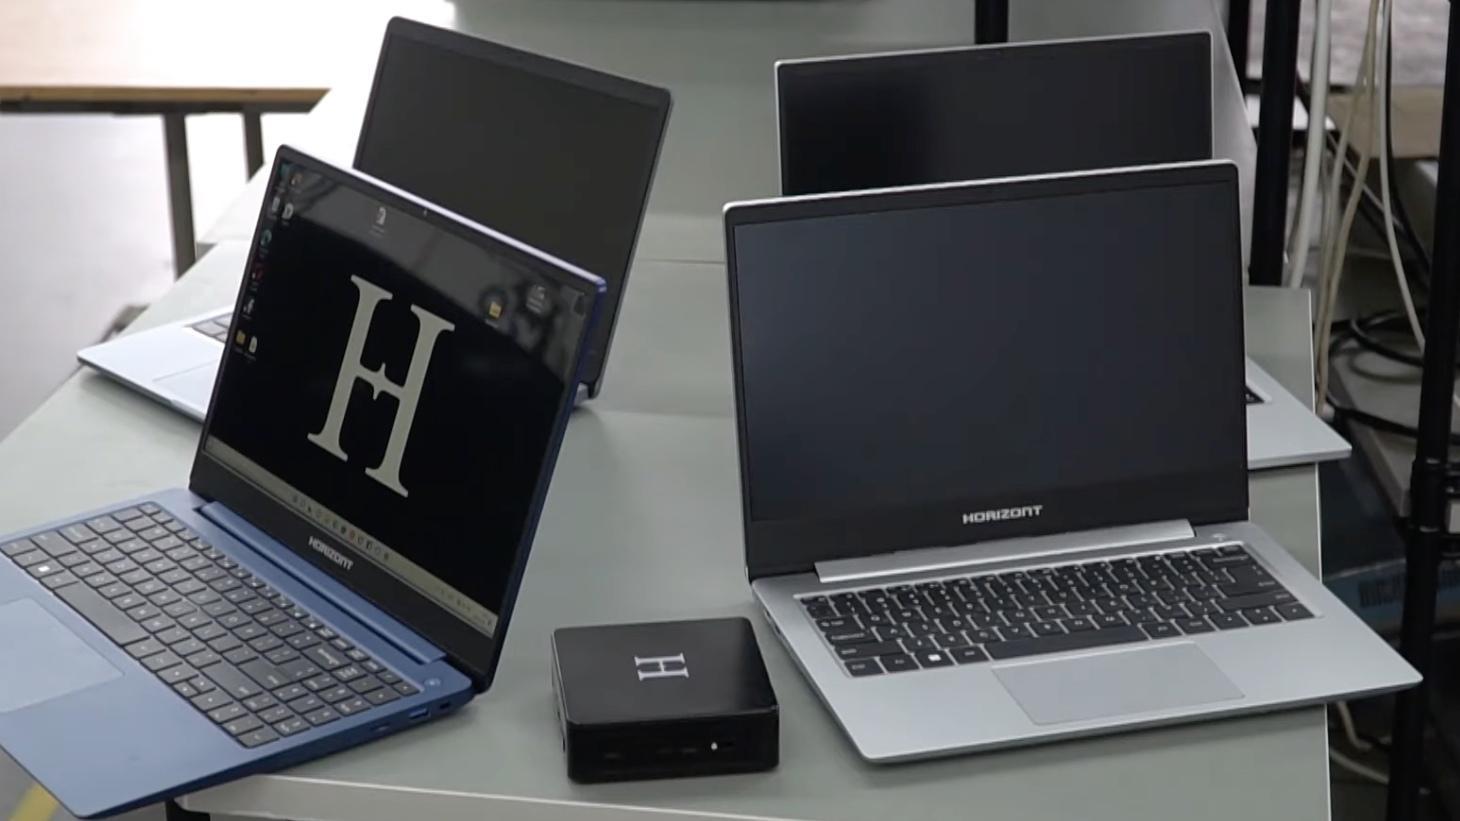 В России стартовали продажи белорусских ноутбуков Horizont